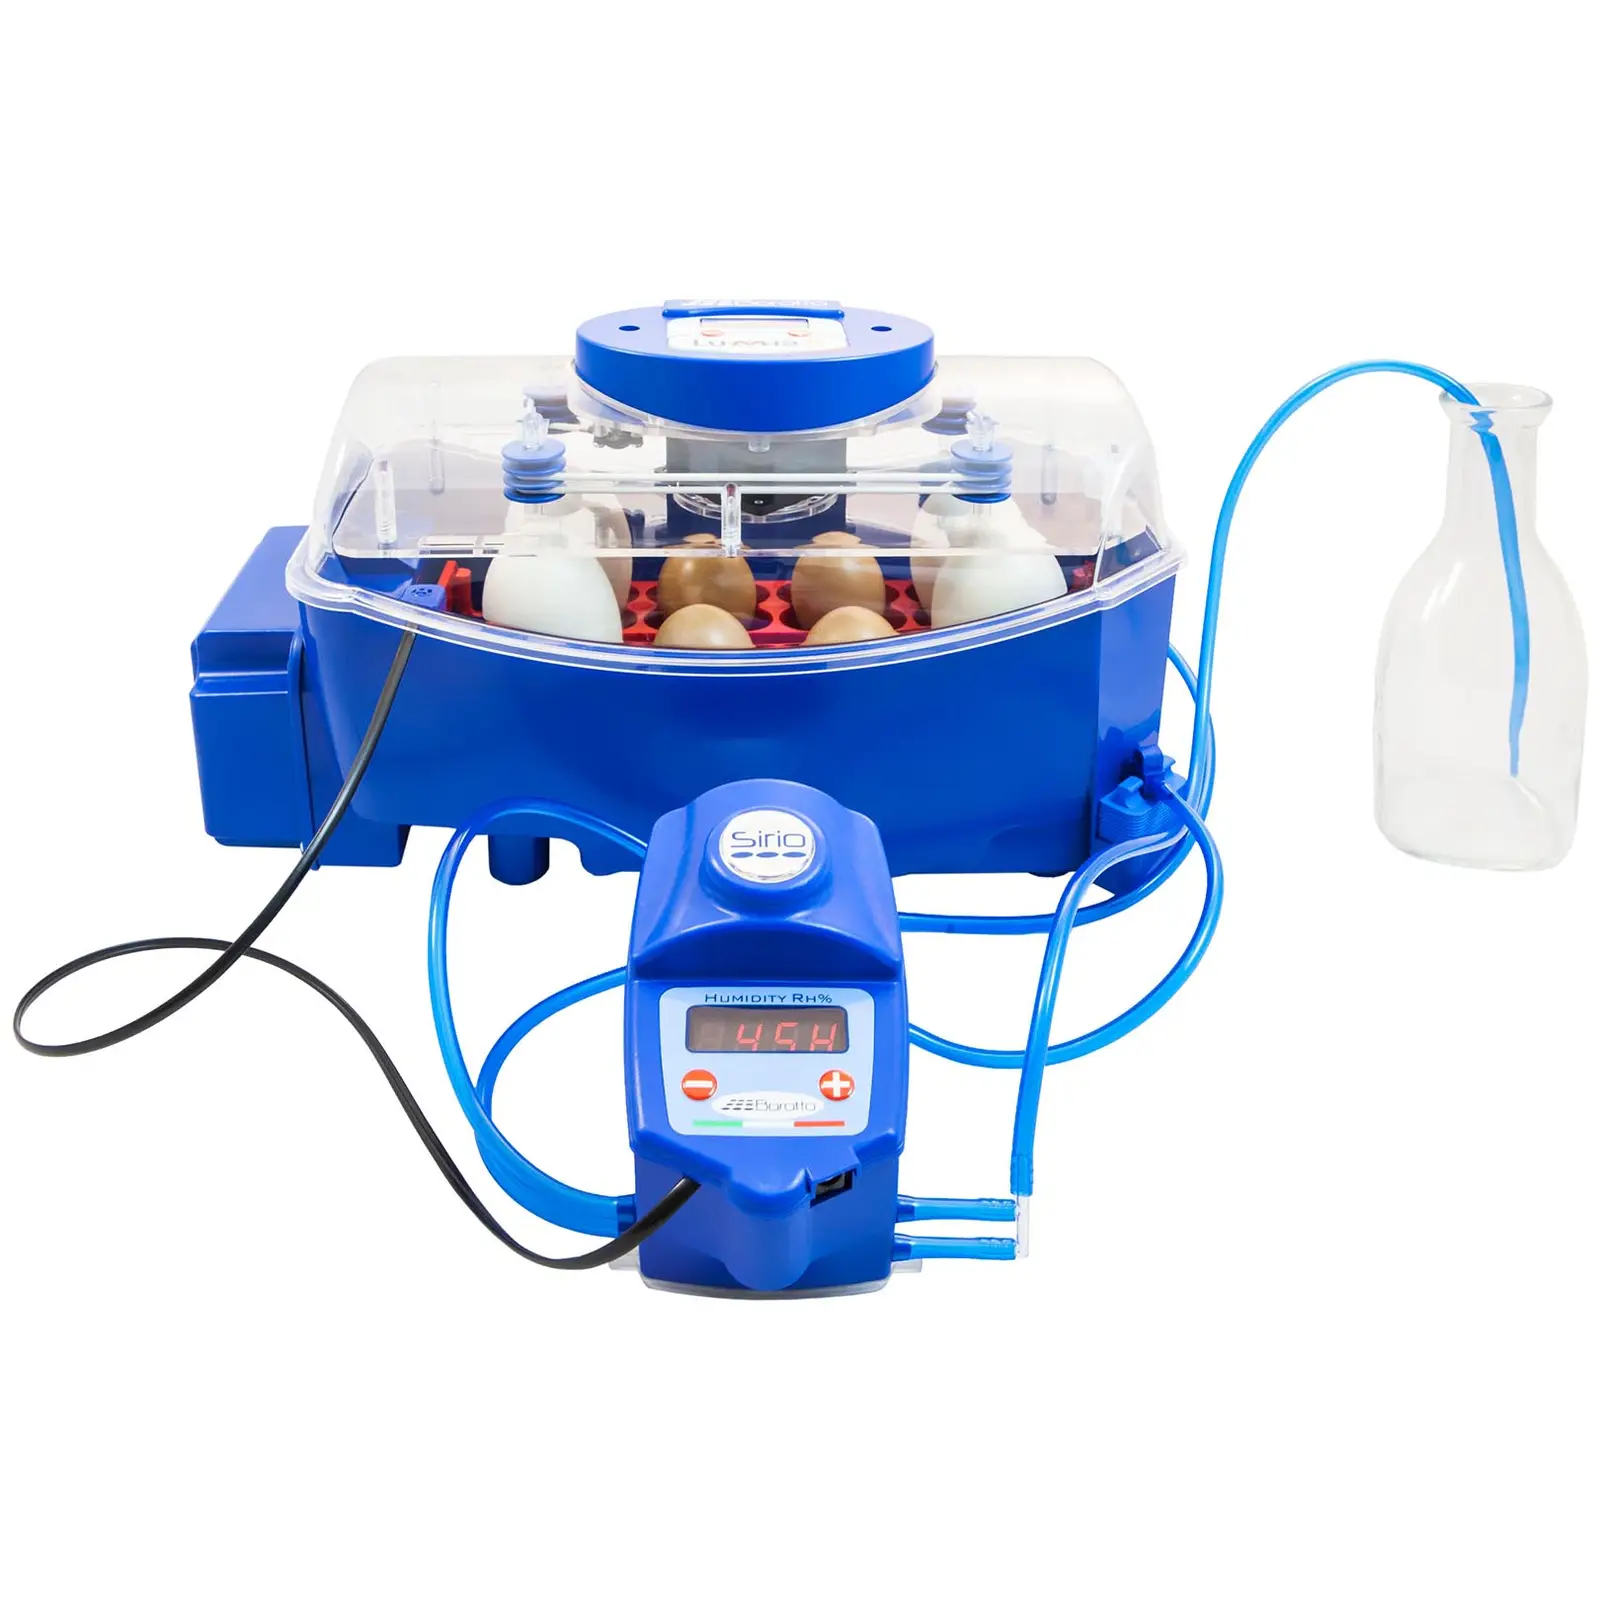 Inkubator - 8 jaja - uključujući sustav za dovod vode - potpuno automatski